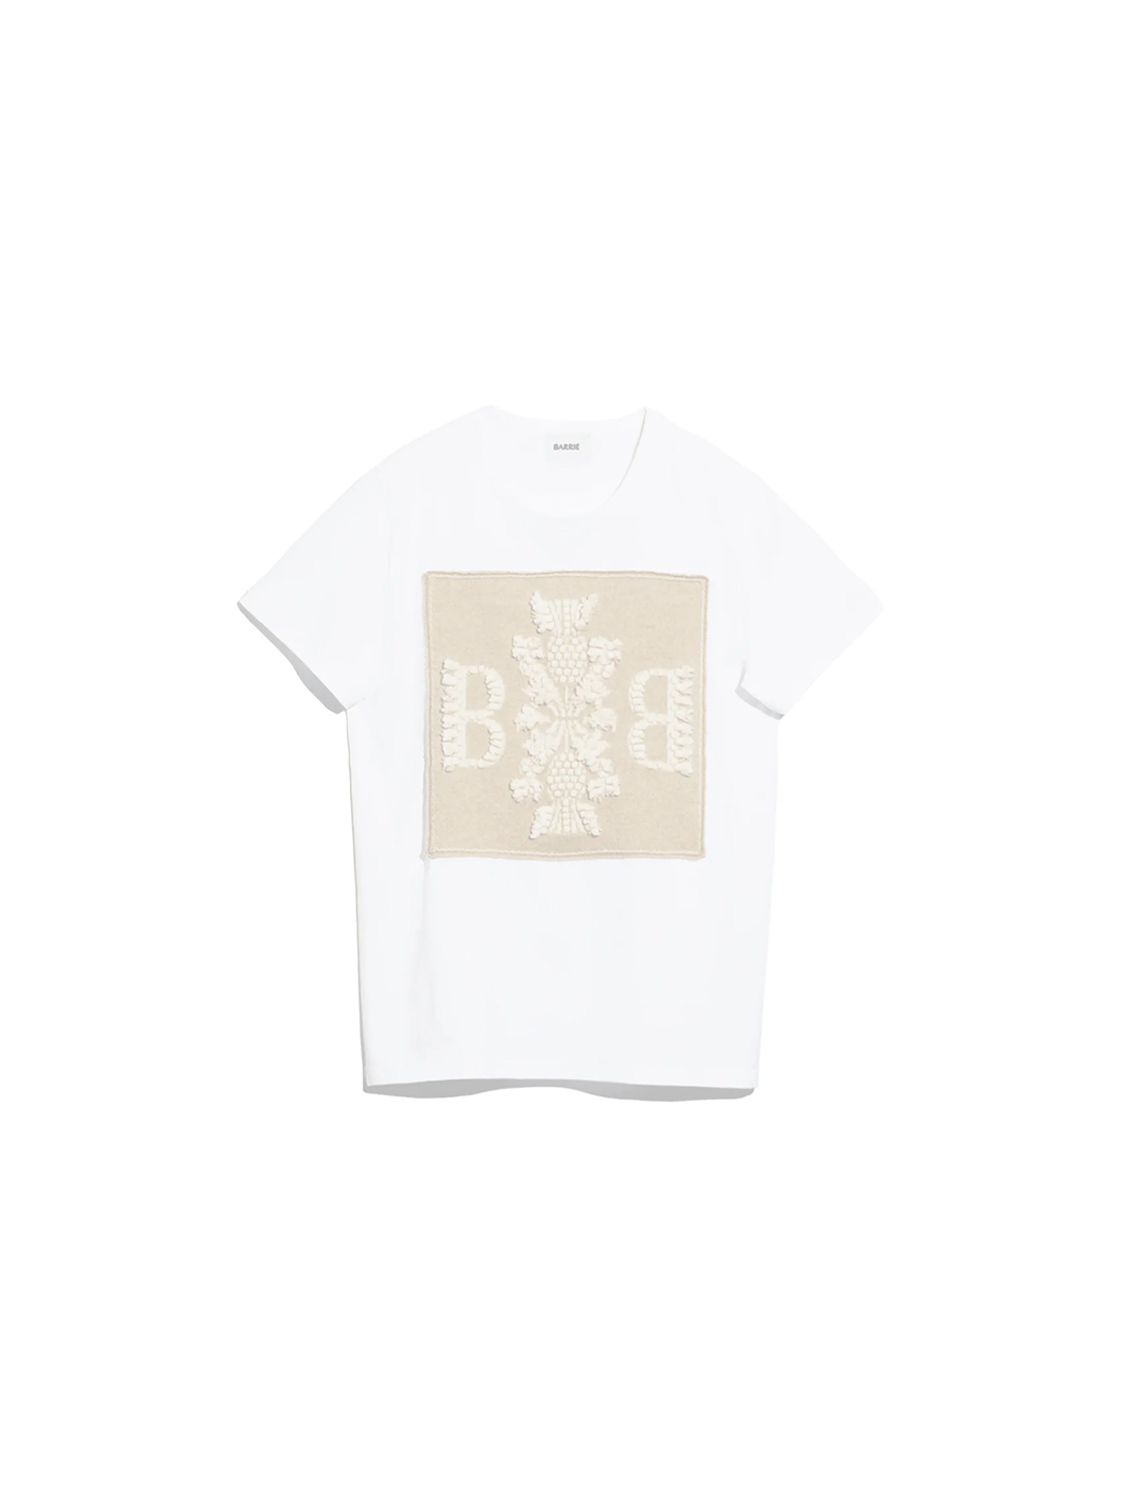 Baumwoll-T-Shirt mit Kaschmir-Applikation Farbe: creme Größe: S